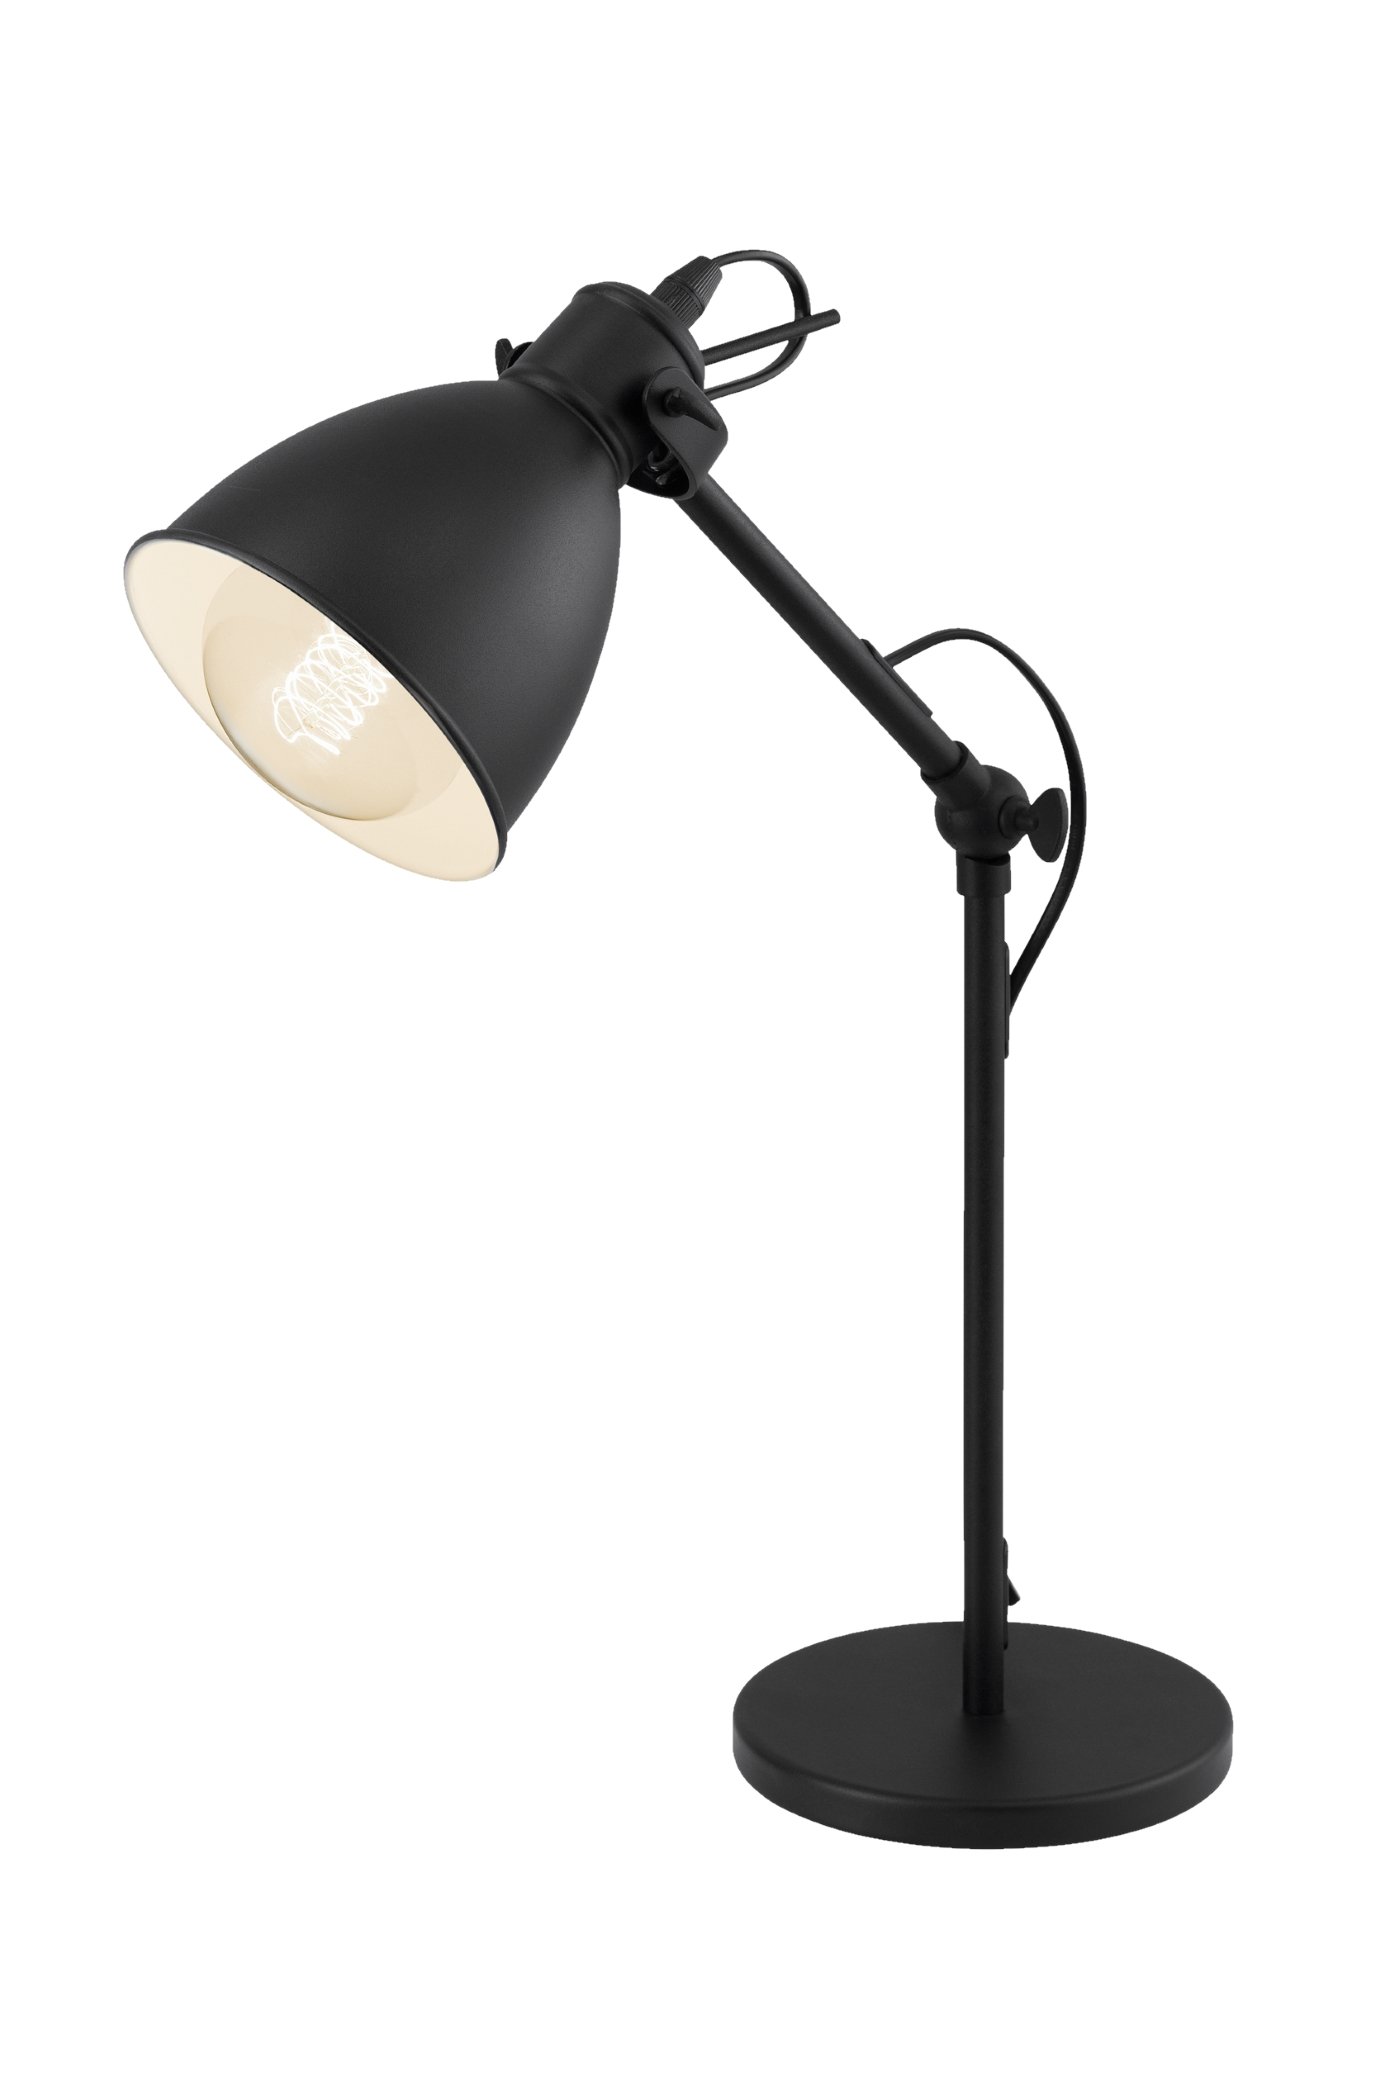   
                        Настільна лампа EGLO (Австрія) 82694    
                         у стилі скандинавський.  
                        Тип джерела світла: cвітлодіодні led, енергозберігаючі, розжарювання.                                                 Кольори плафонів і підвісок: чорний, білий.                         Матеріал: сталь.                          фото 1